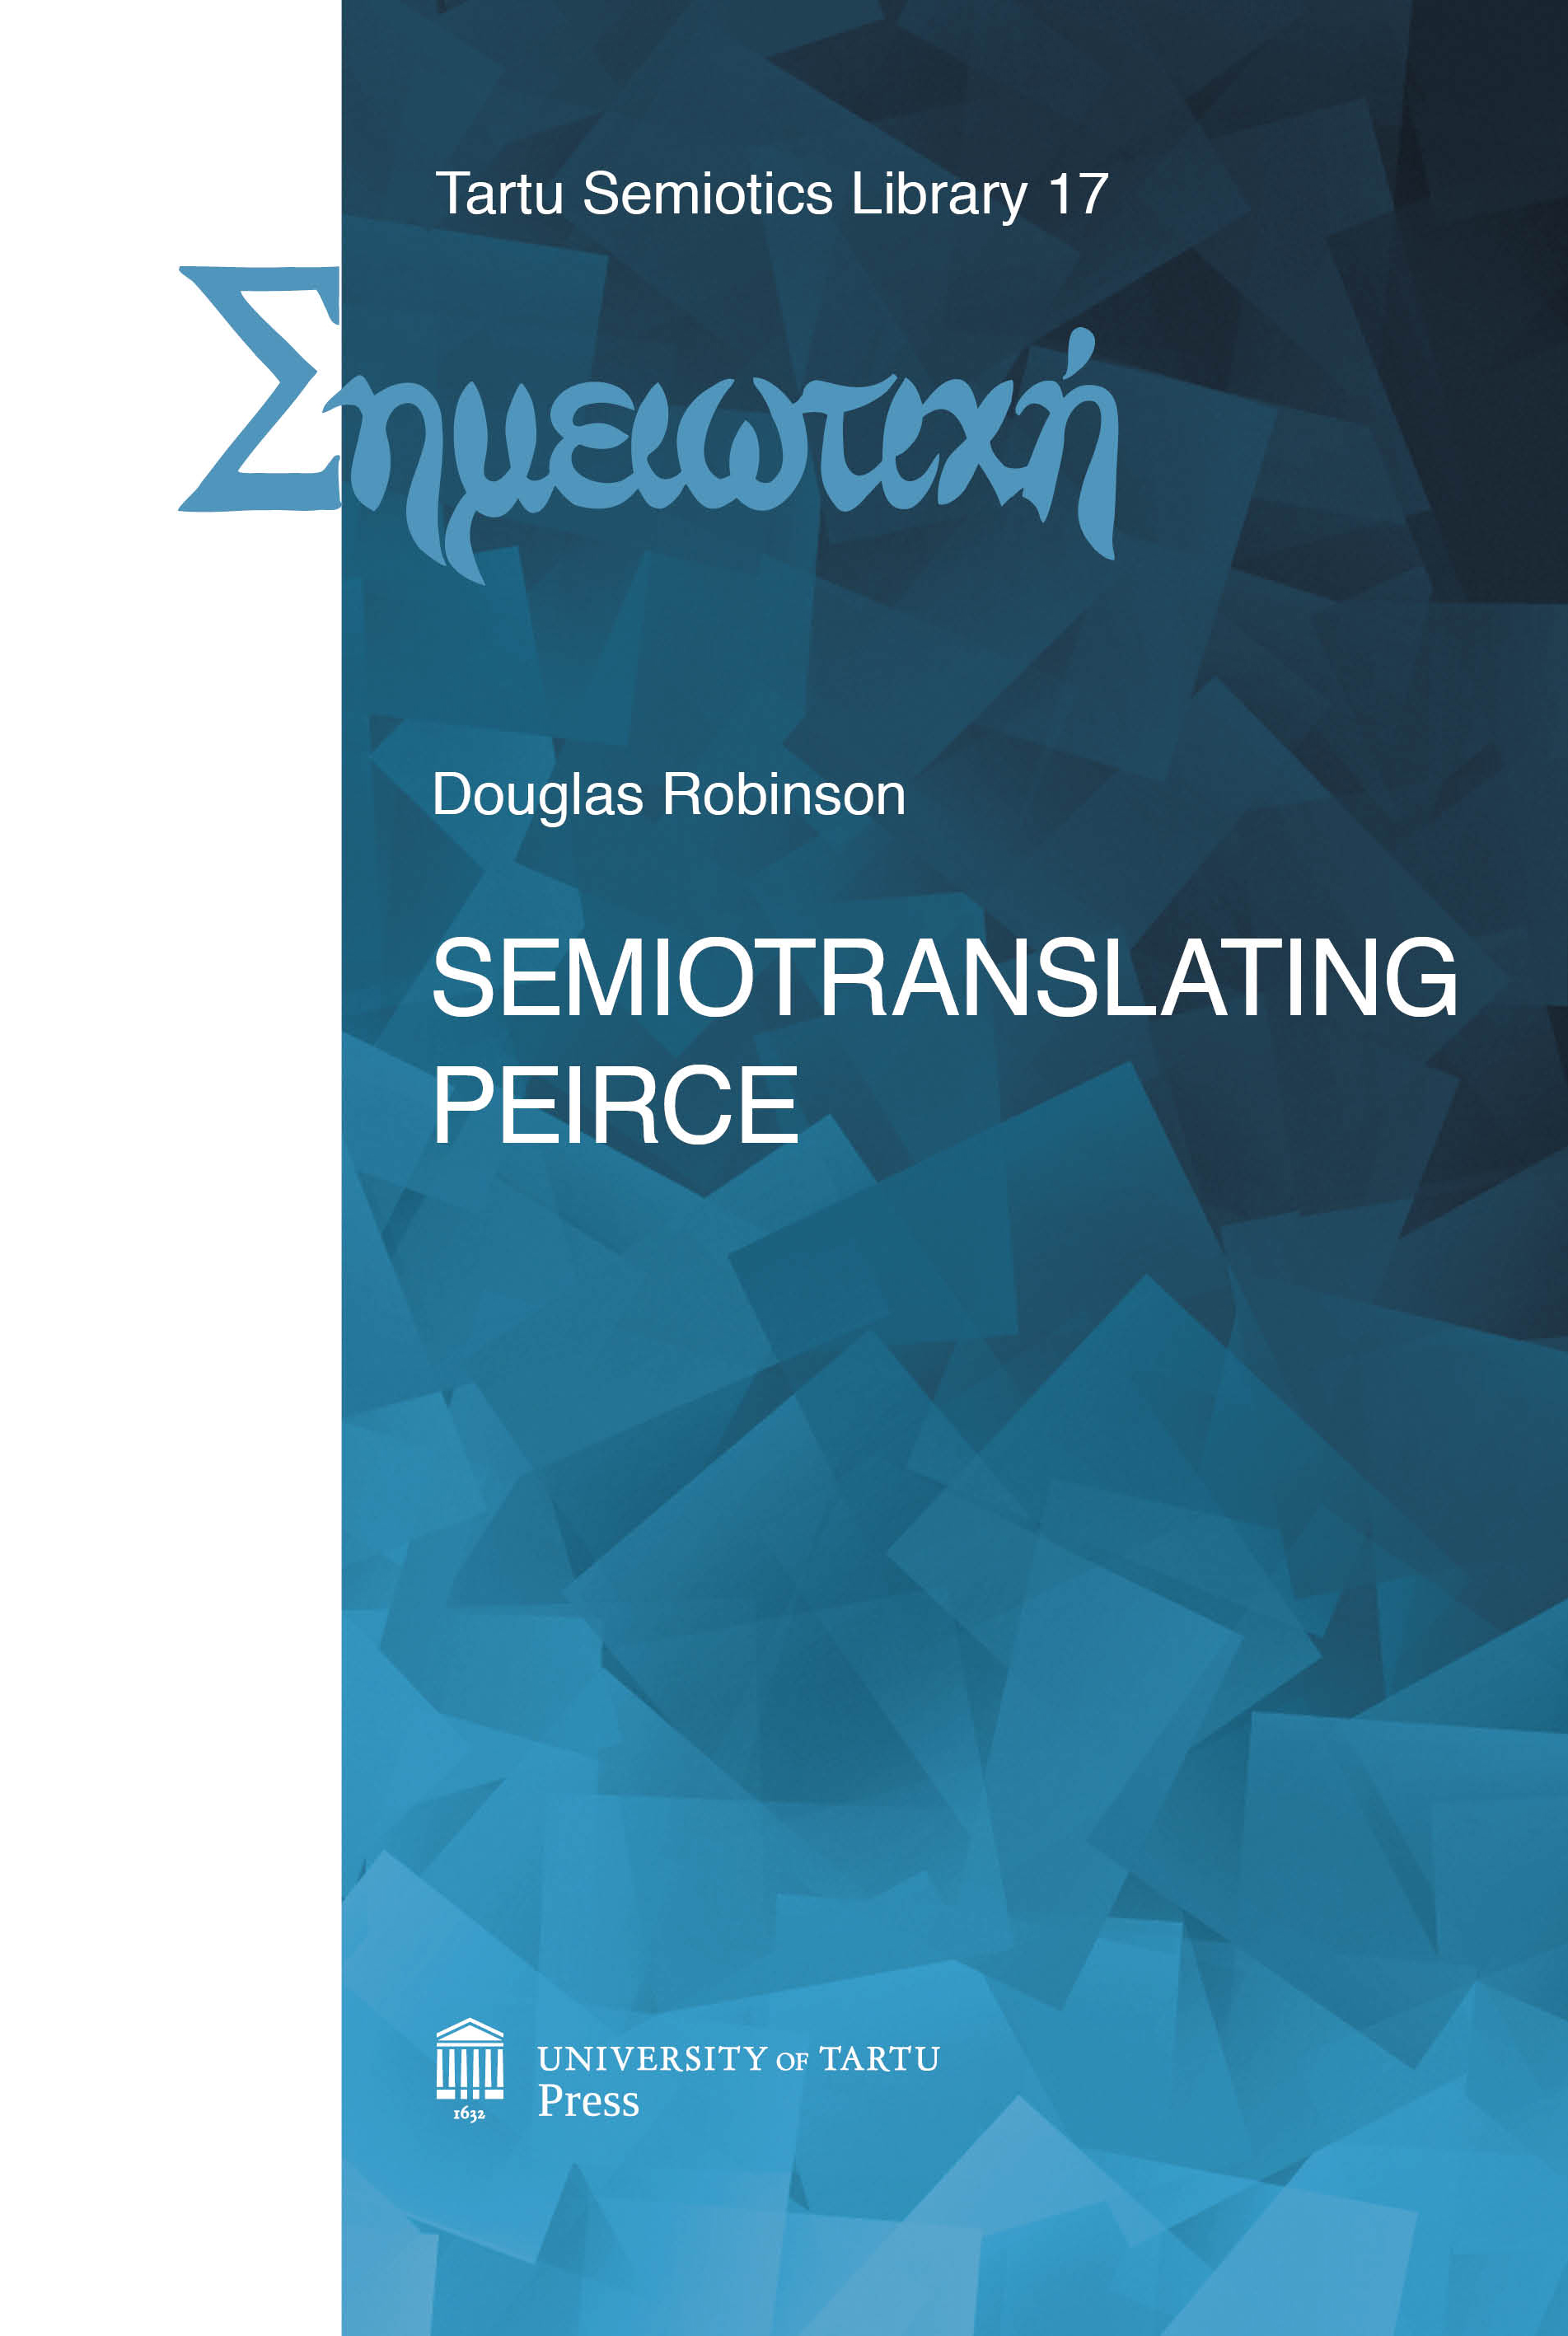 Chapter 6. - Test case 4: Semiotranslating Wittgenstein into Finnish